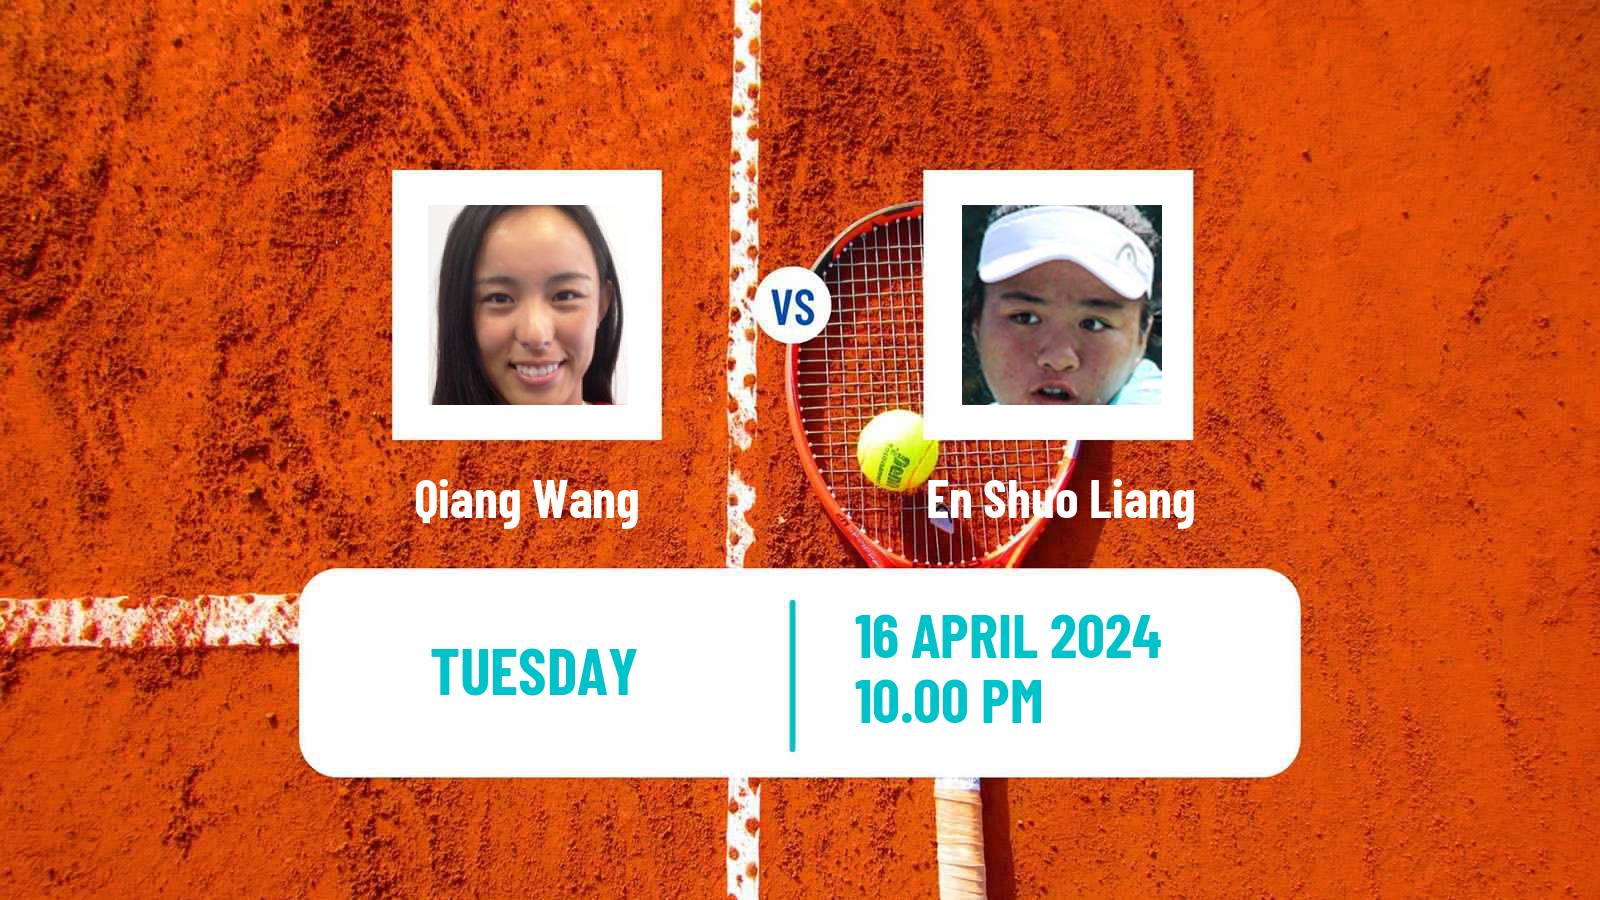 Tennis ITF W50 Shenzhen 2 Women Qiang Wang - En Shuo Liang